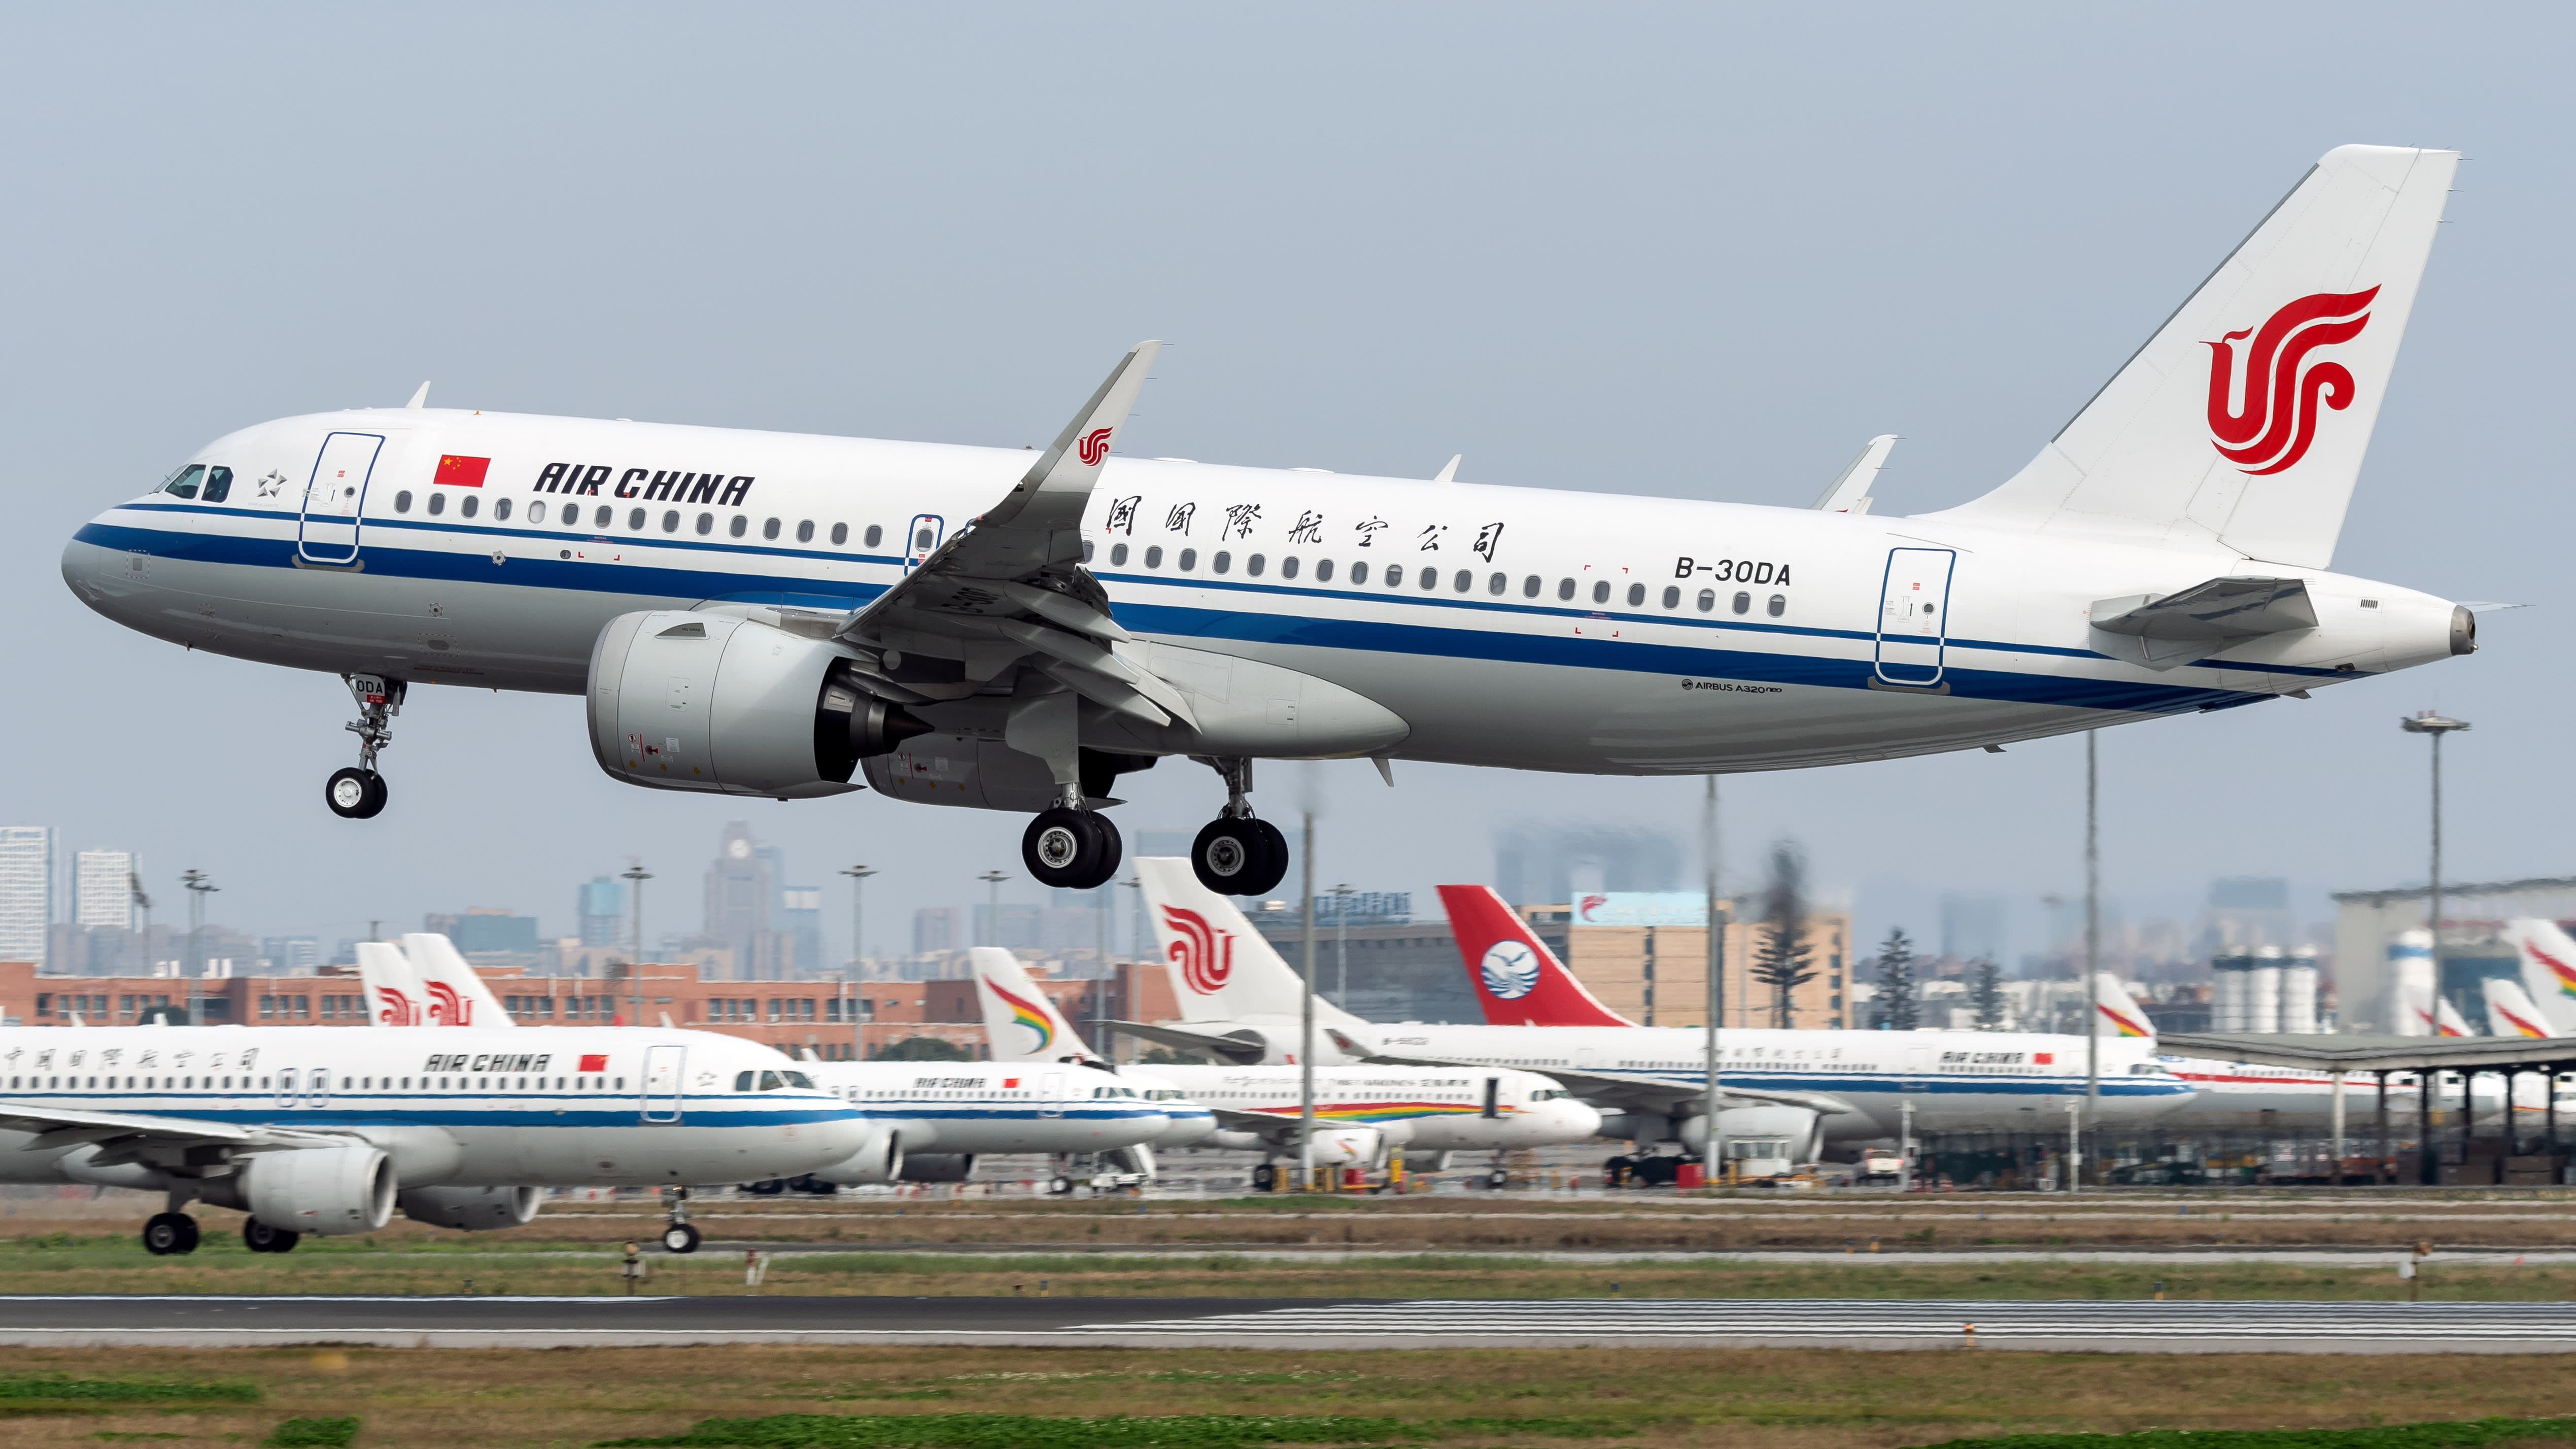 Pourquoi la Chine va lancer une nouvelle compagnie aérienne malgré la crise du coronavirus